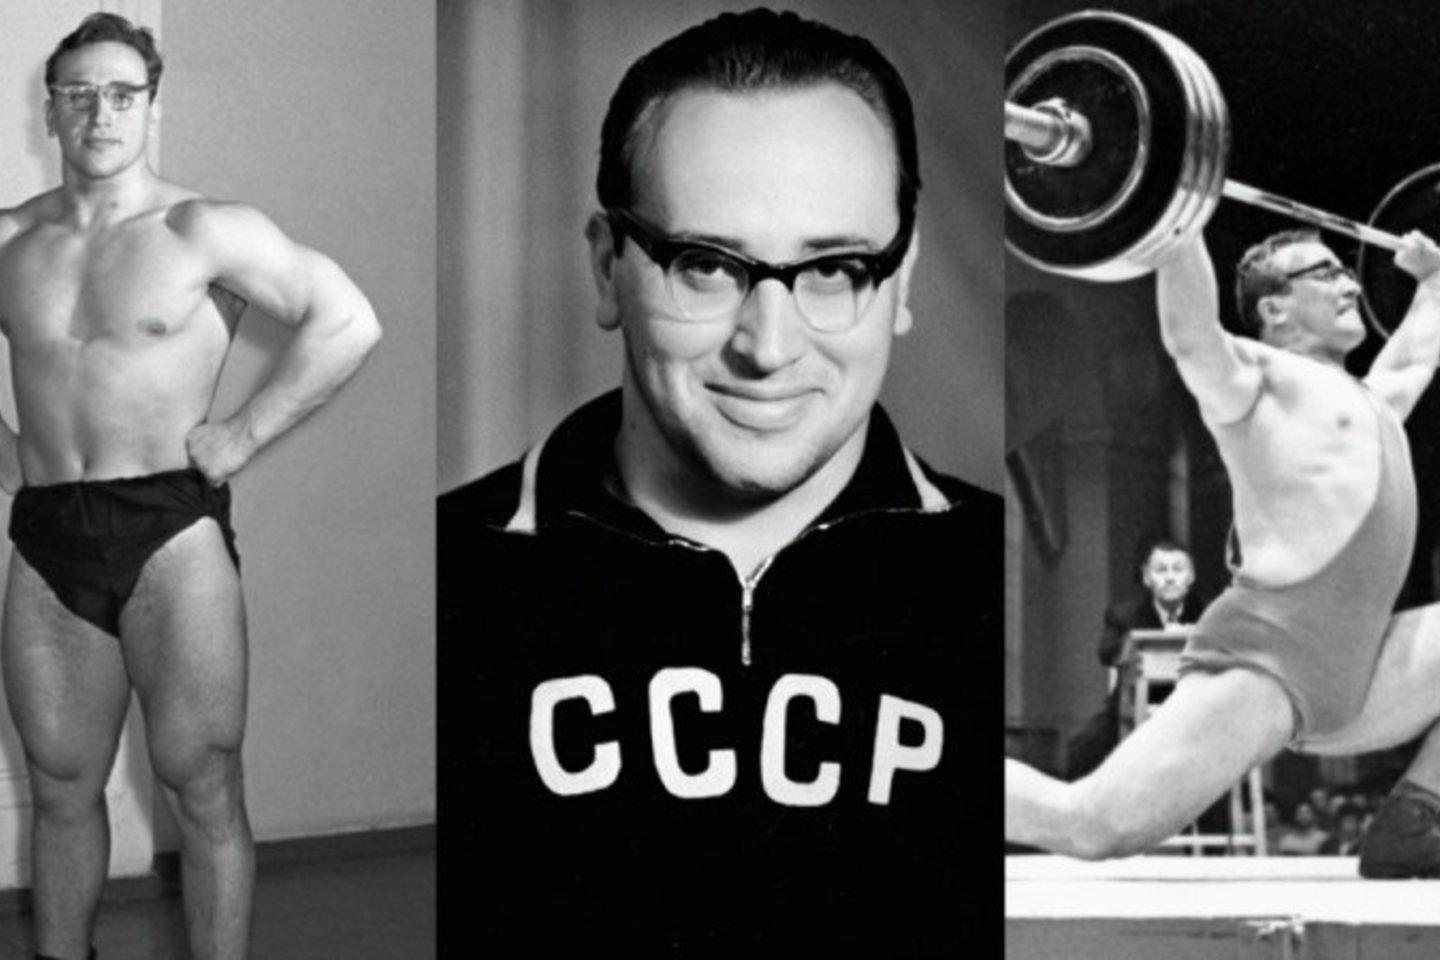  Mirė sunkiosios atletikos legenda J.Vlasovas<br>RIA novosti nuotr. 